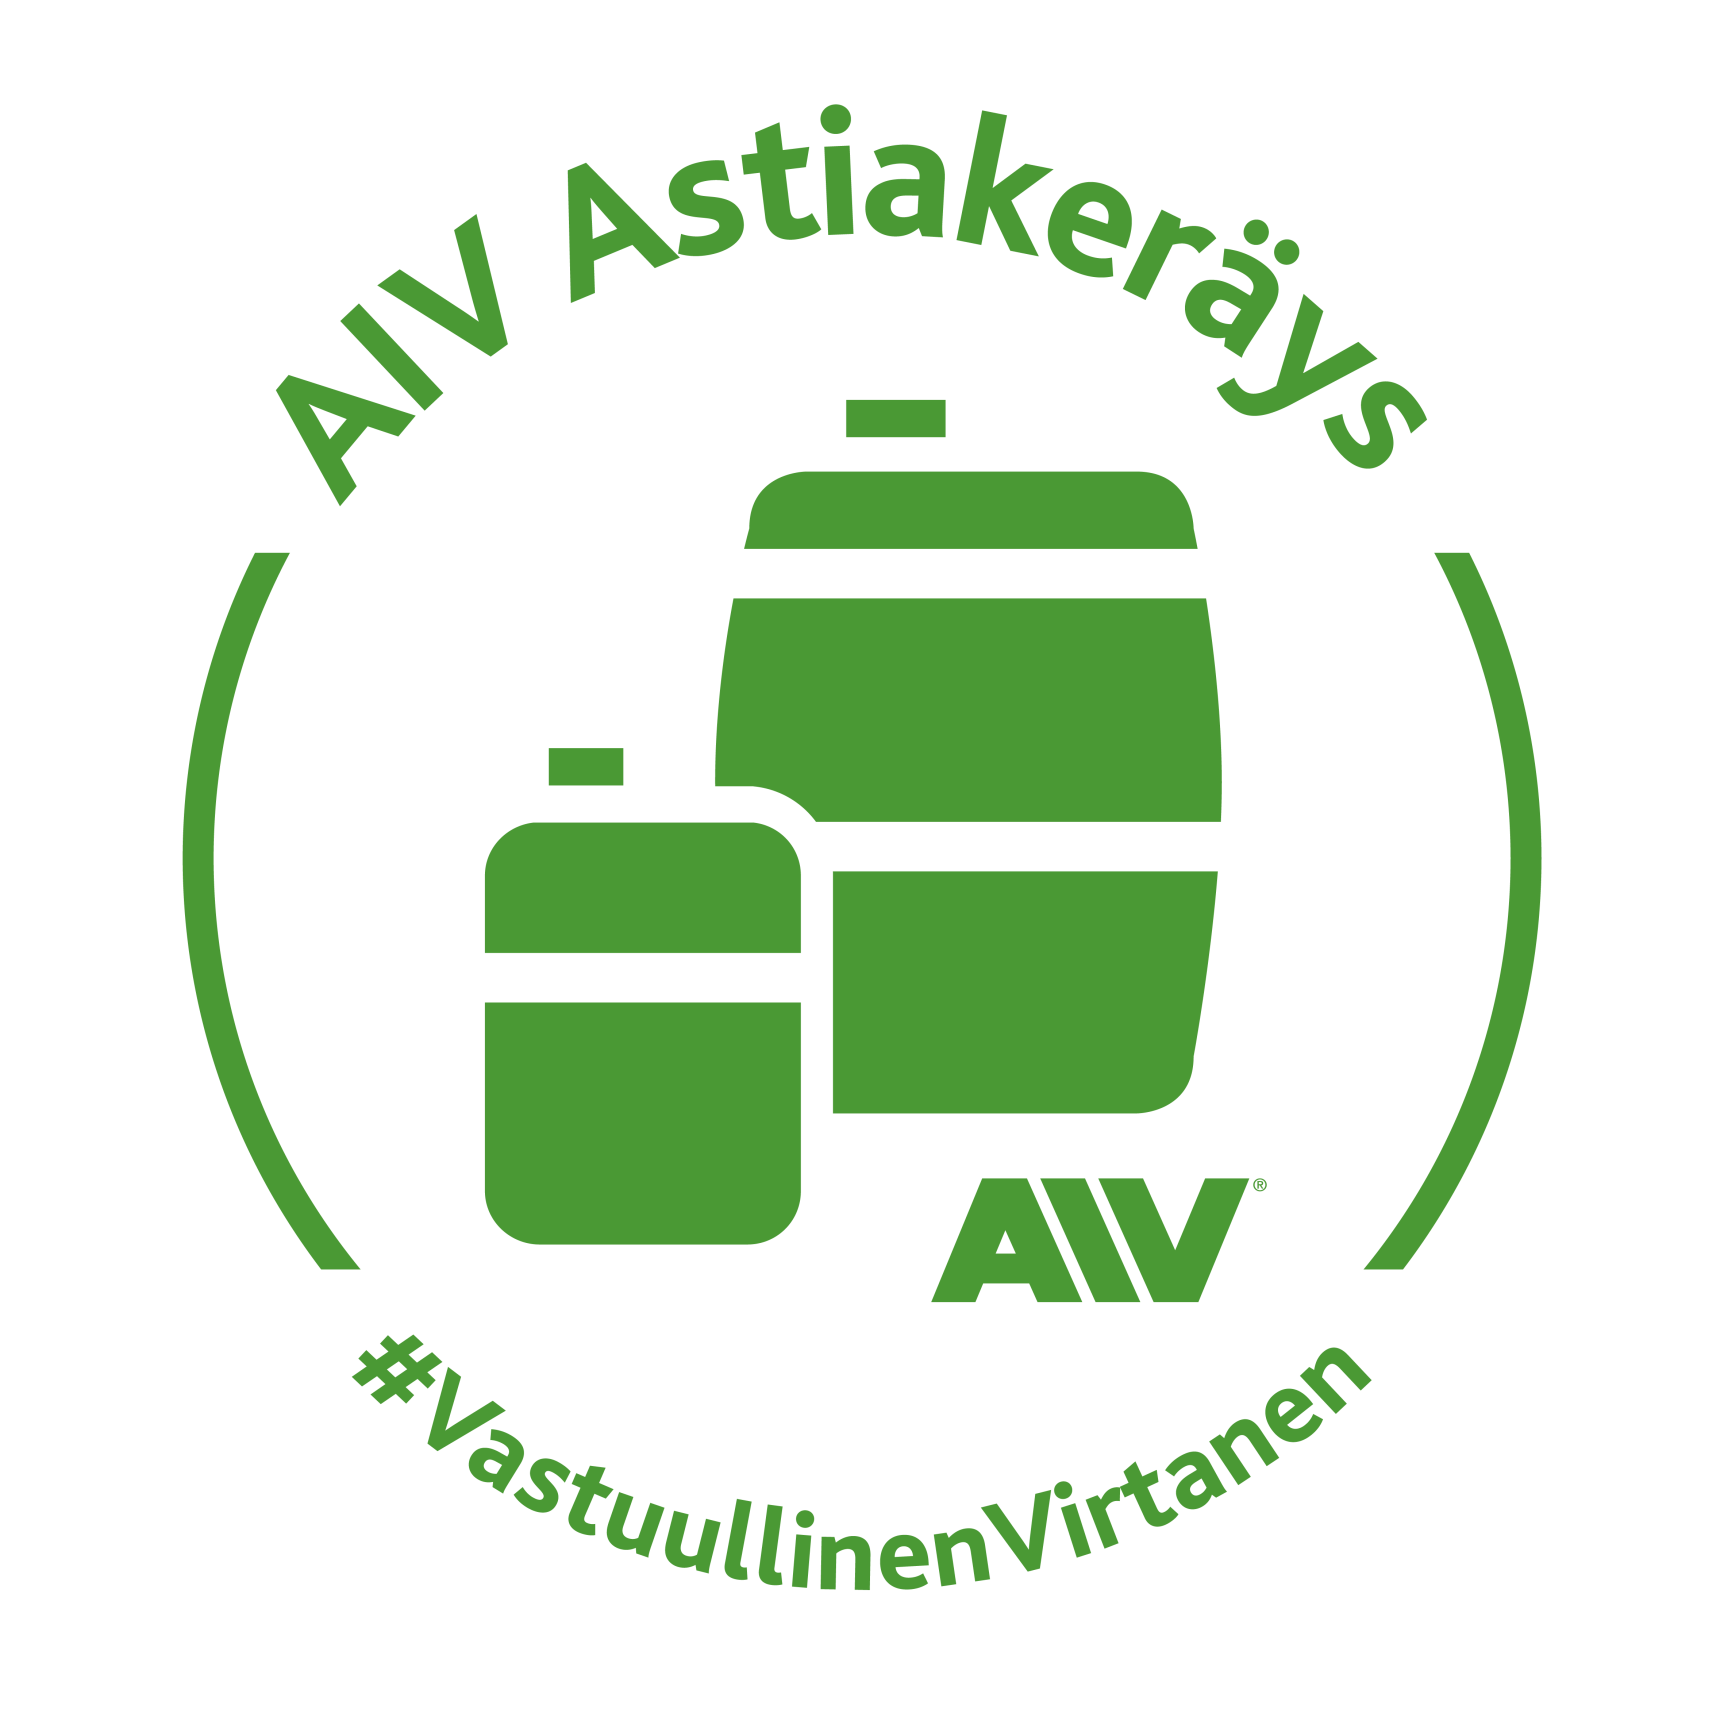 AIV-astiakerays-kampanjatunnus-e1466059341276.png